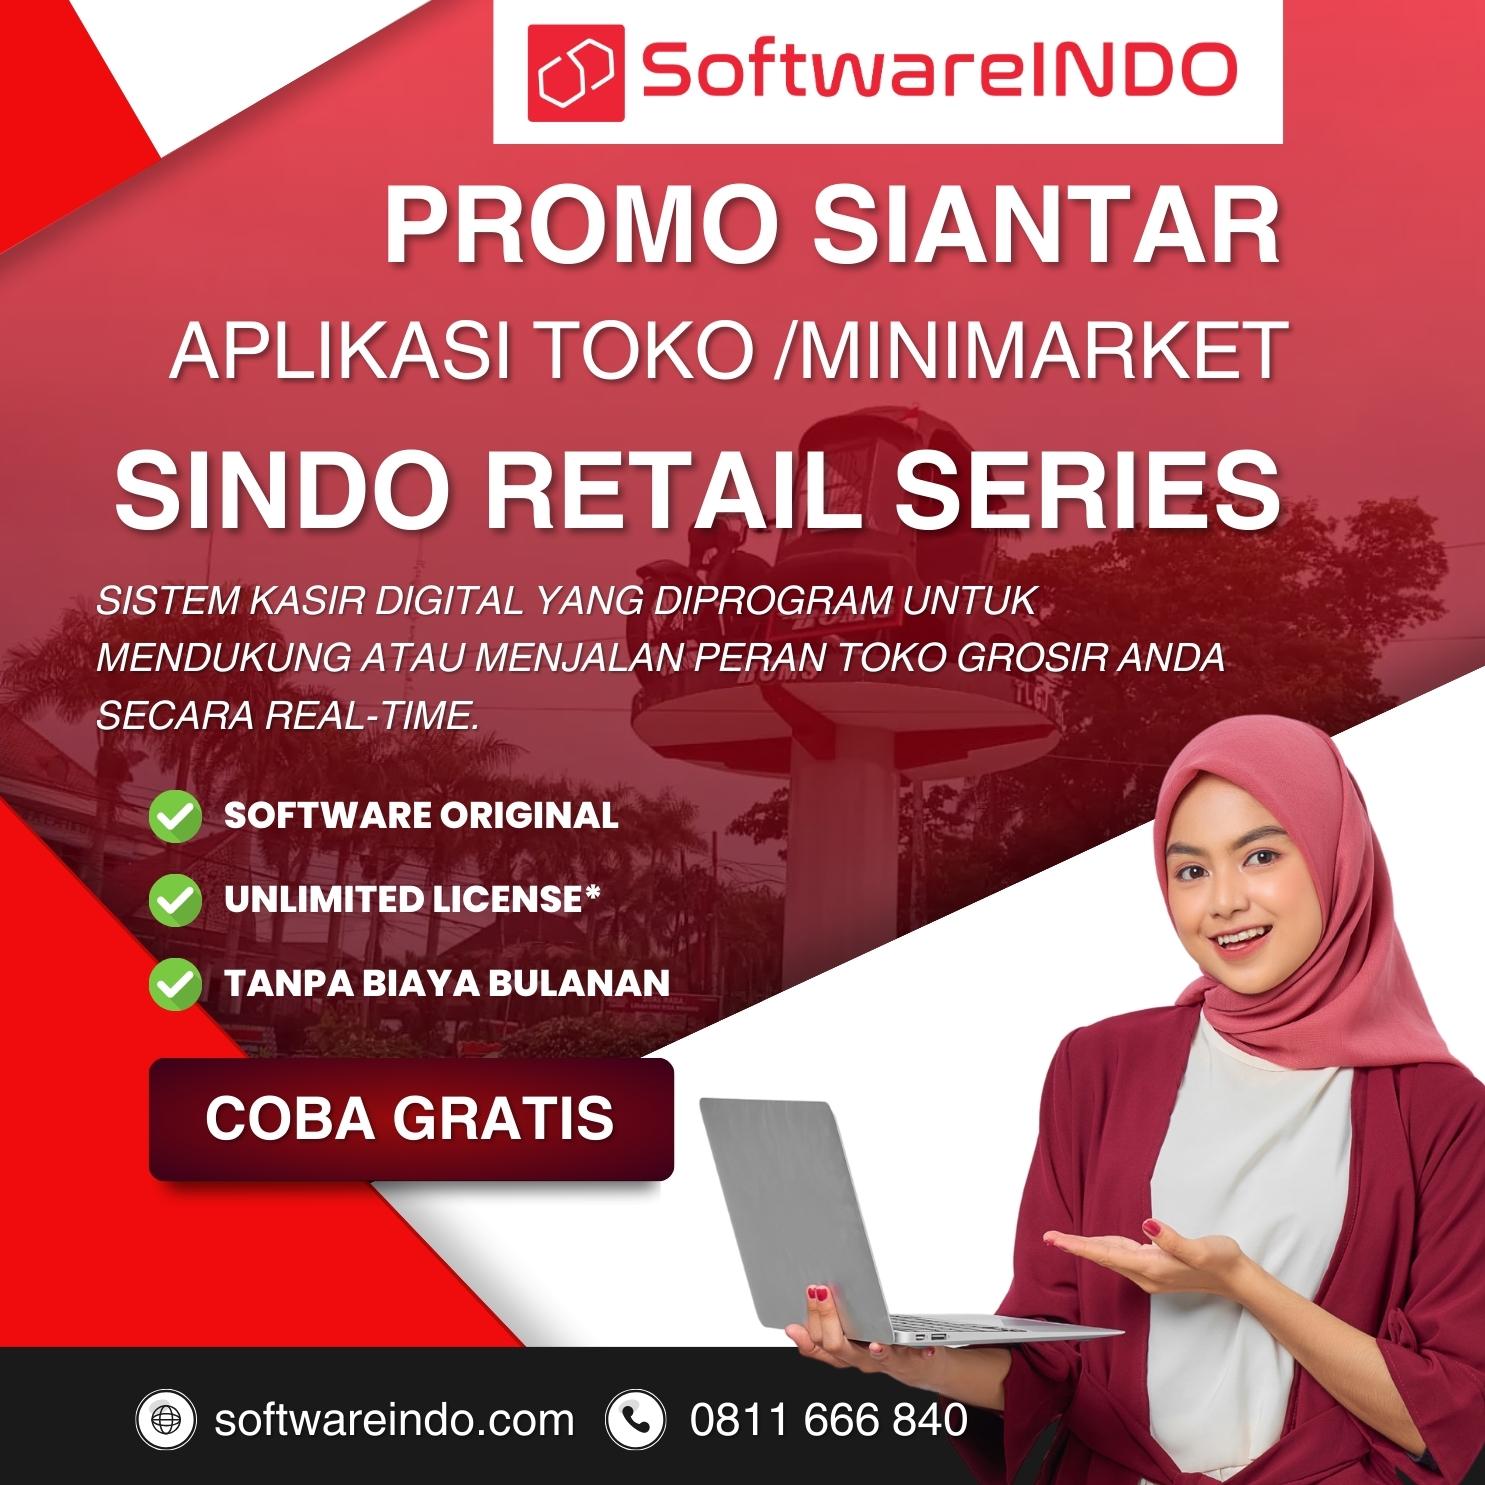 Pematang Siantar - Solusi toko grosir dengan software kasir - Software Minimarket, SINDO Retail Series - SoftwareINDO